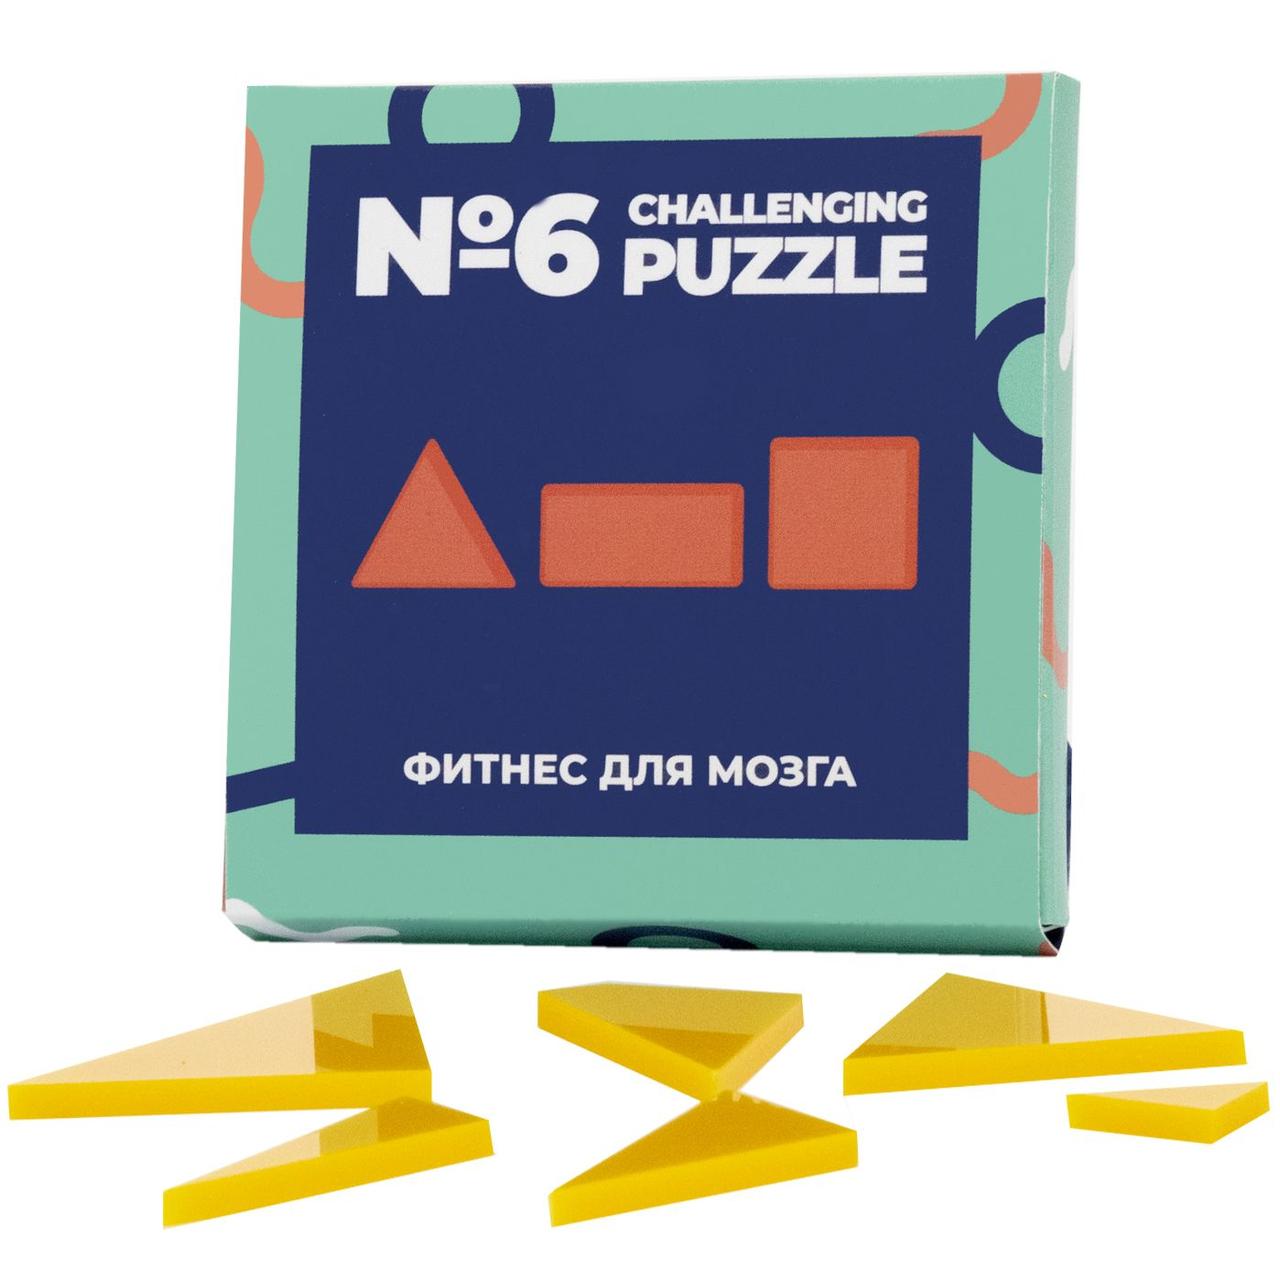 Головоломка Challenging Puzzle Acrylic, модель 6 (артикул 12107.04)